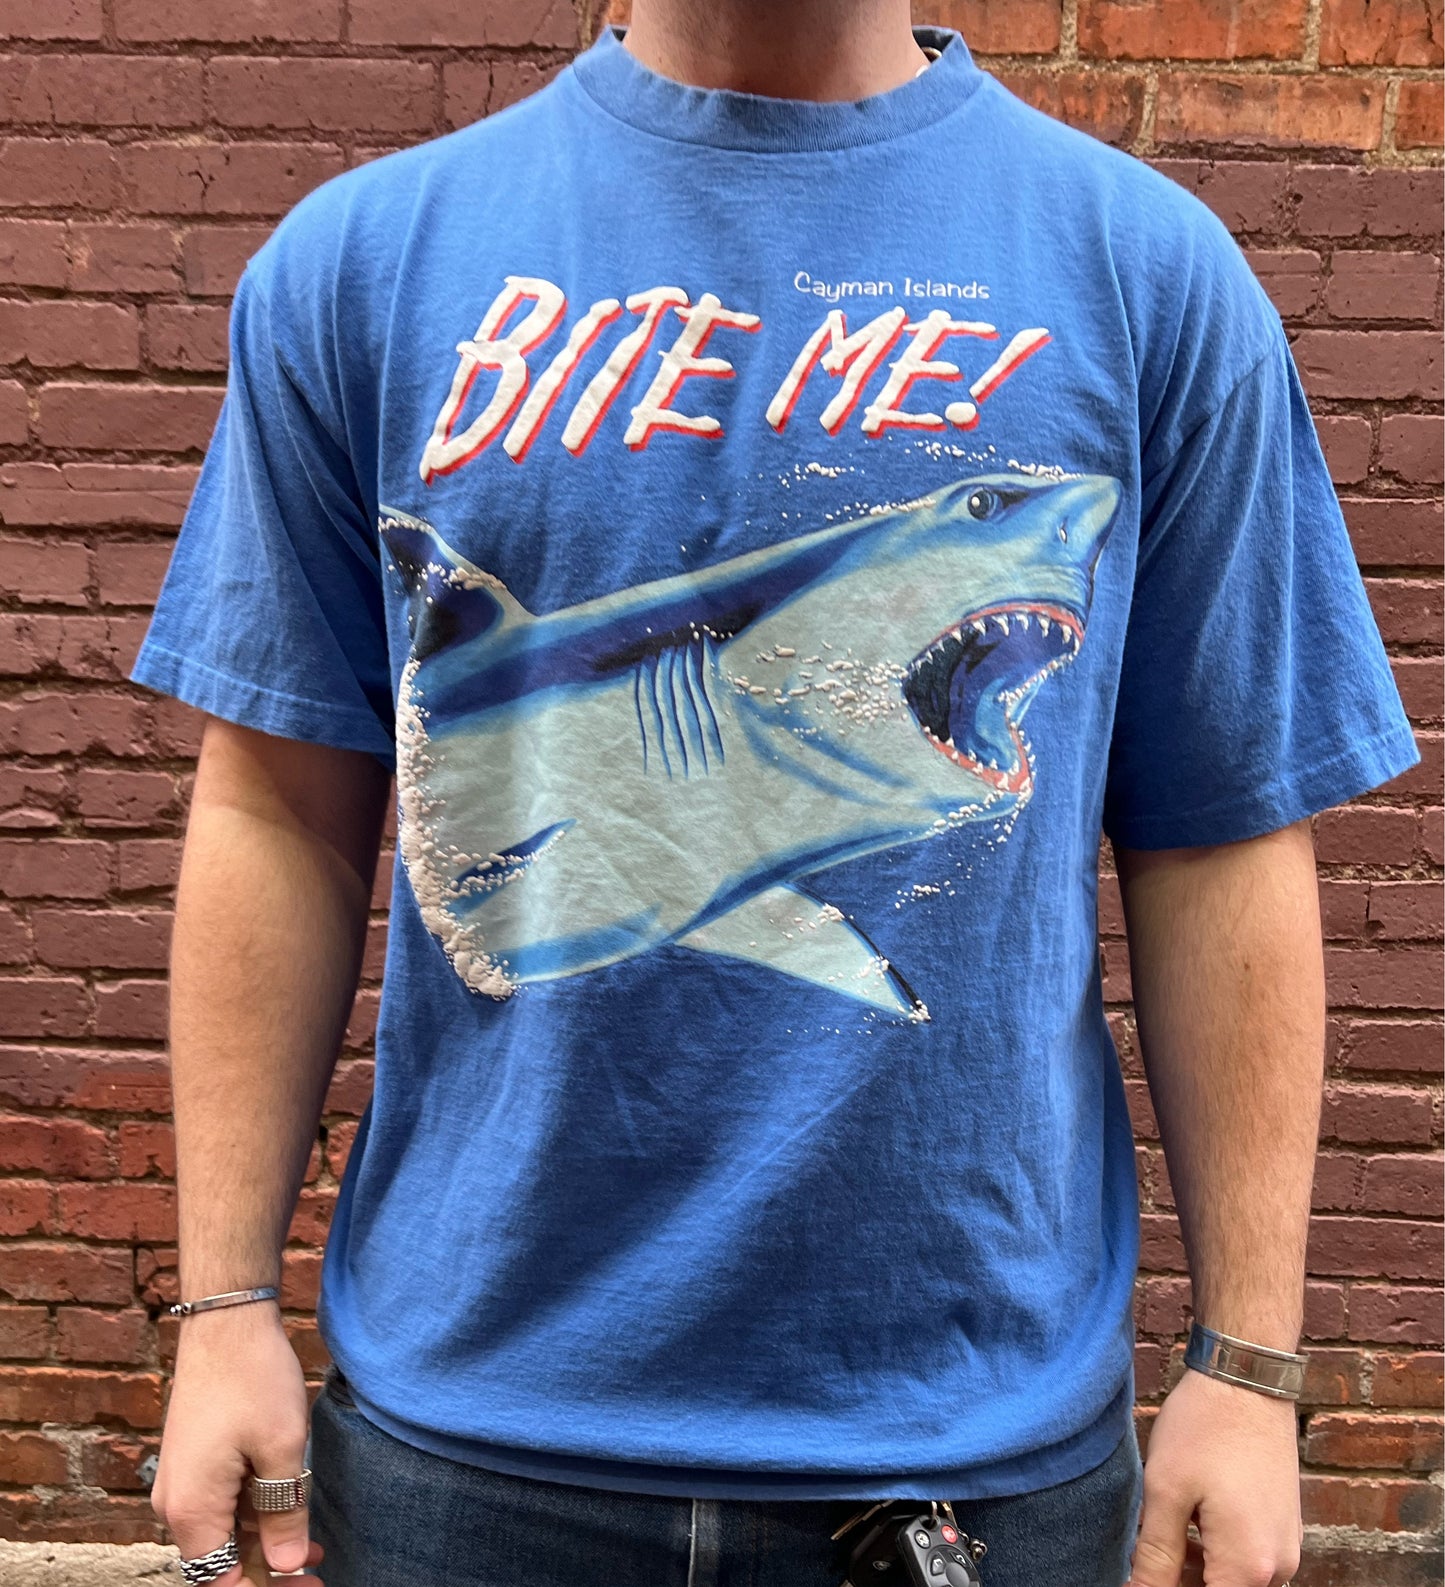 90s Cayman Islands “Bite Me!” Shark t-shirt - Size XL - Vintage souven –  Fourth Place